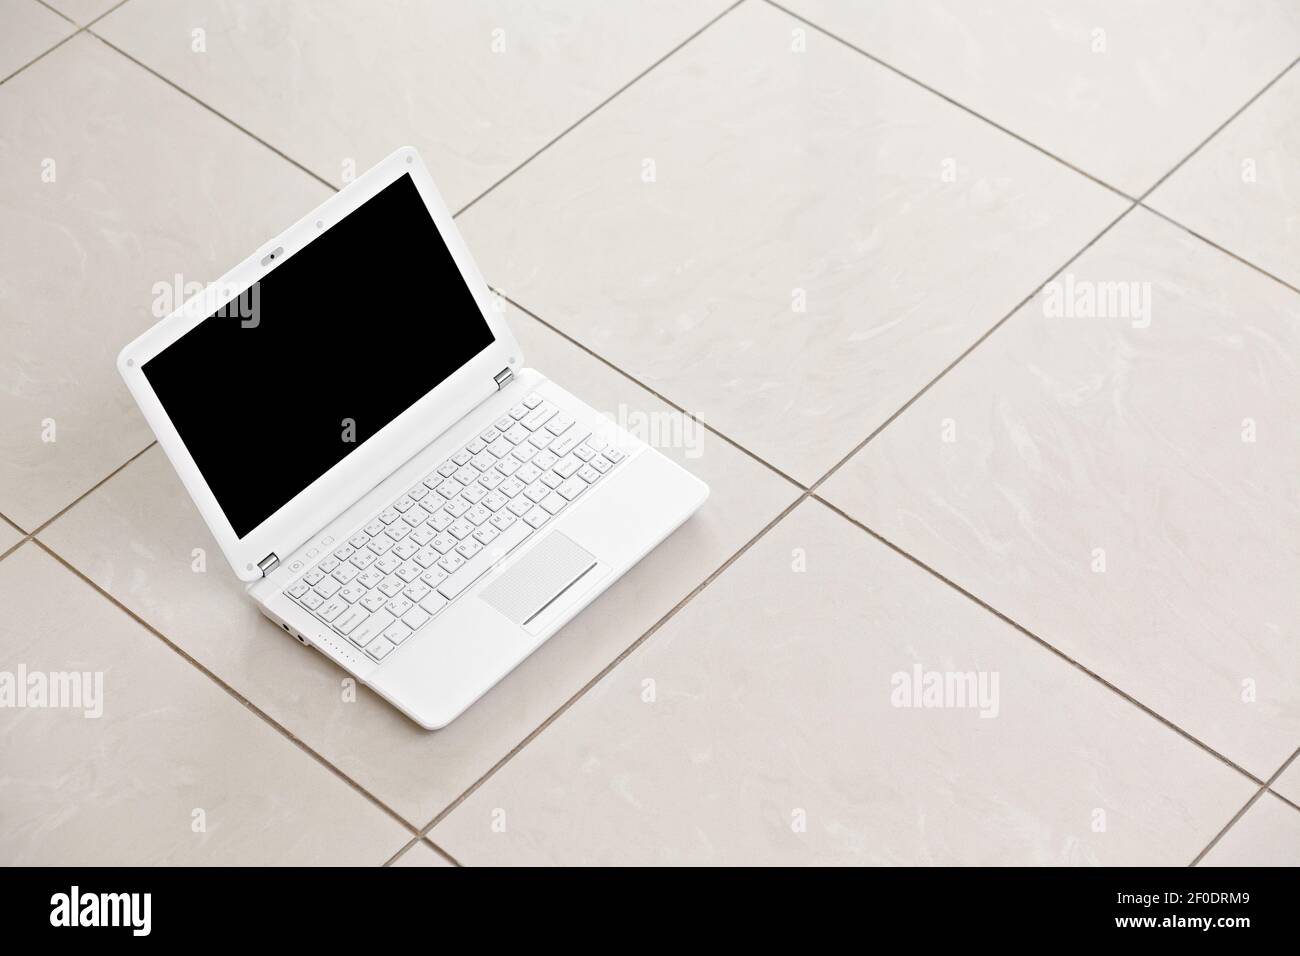 White laptop on bright tiled floor. Stock Photo